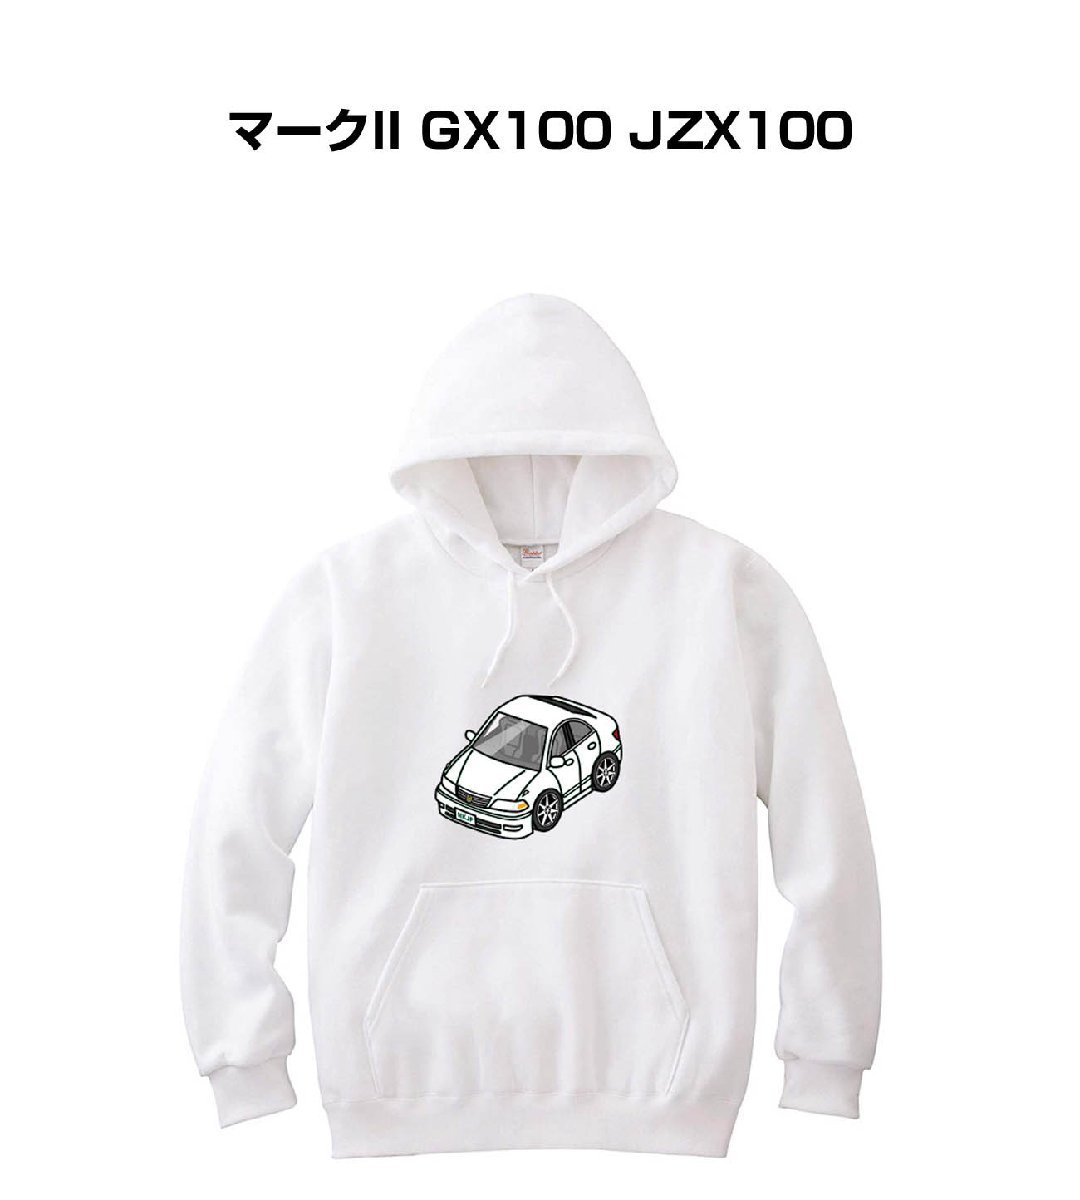 【安心発送】 MKJP パーカー 車好き プレゼント 車 マークII GX100 JZX100 送料無料 Lサイズ